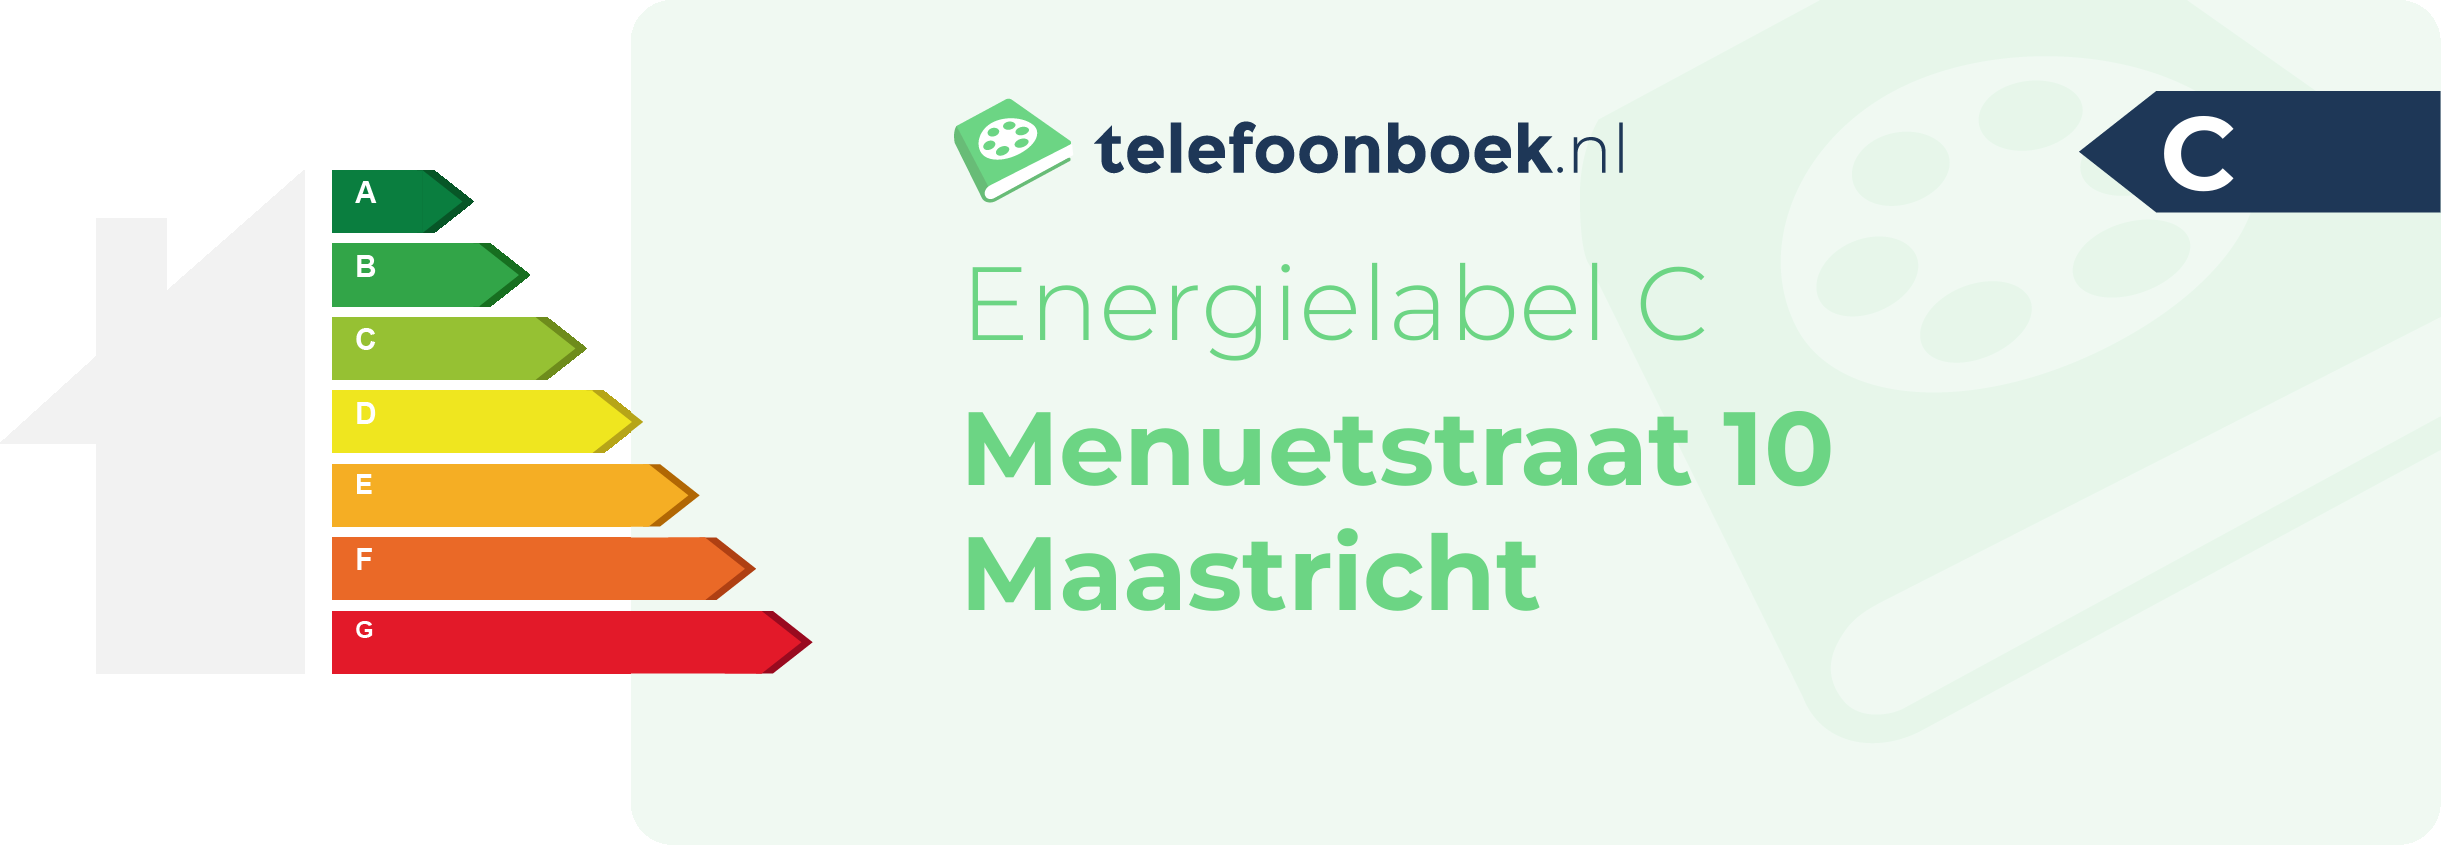 Energielabel Menuetstraat 10 Maastricht